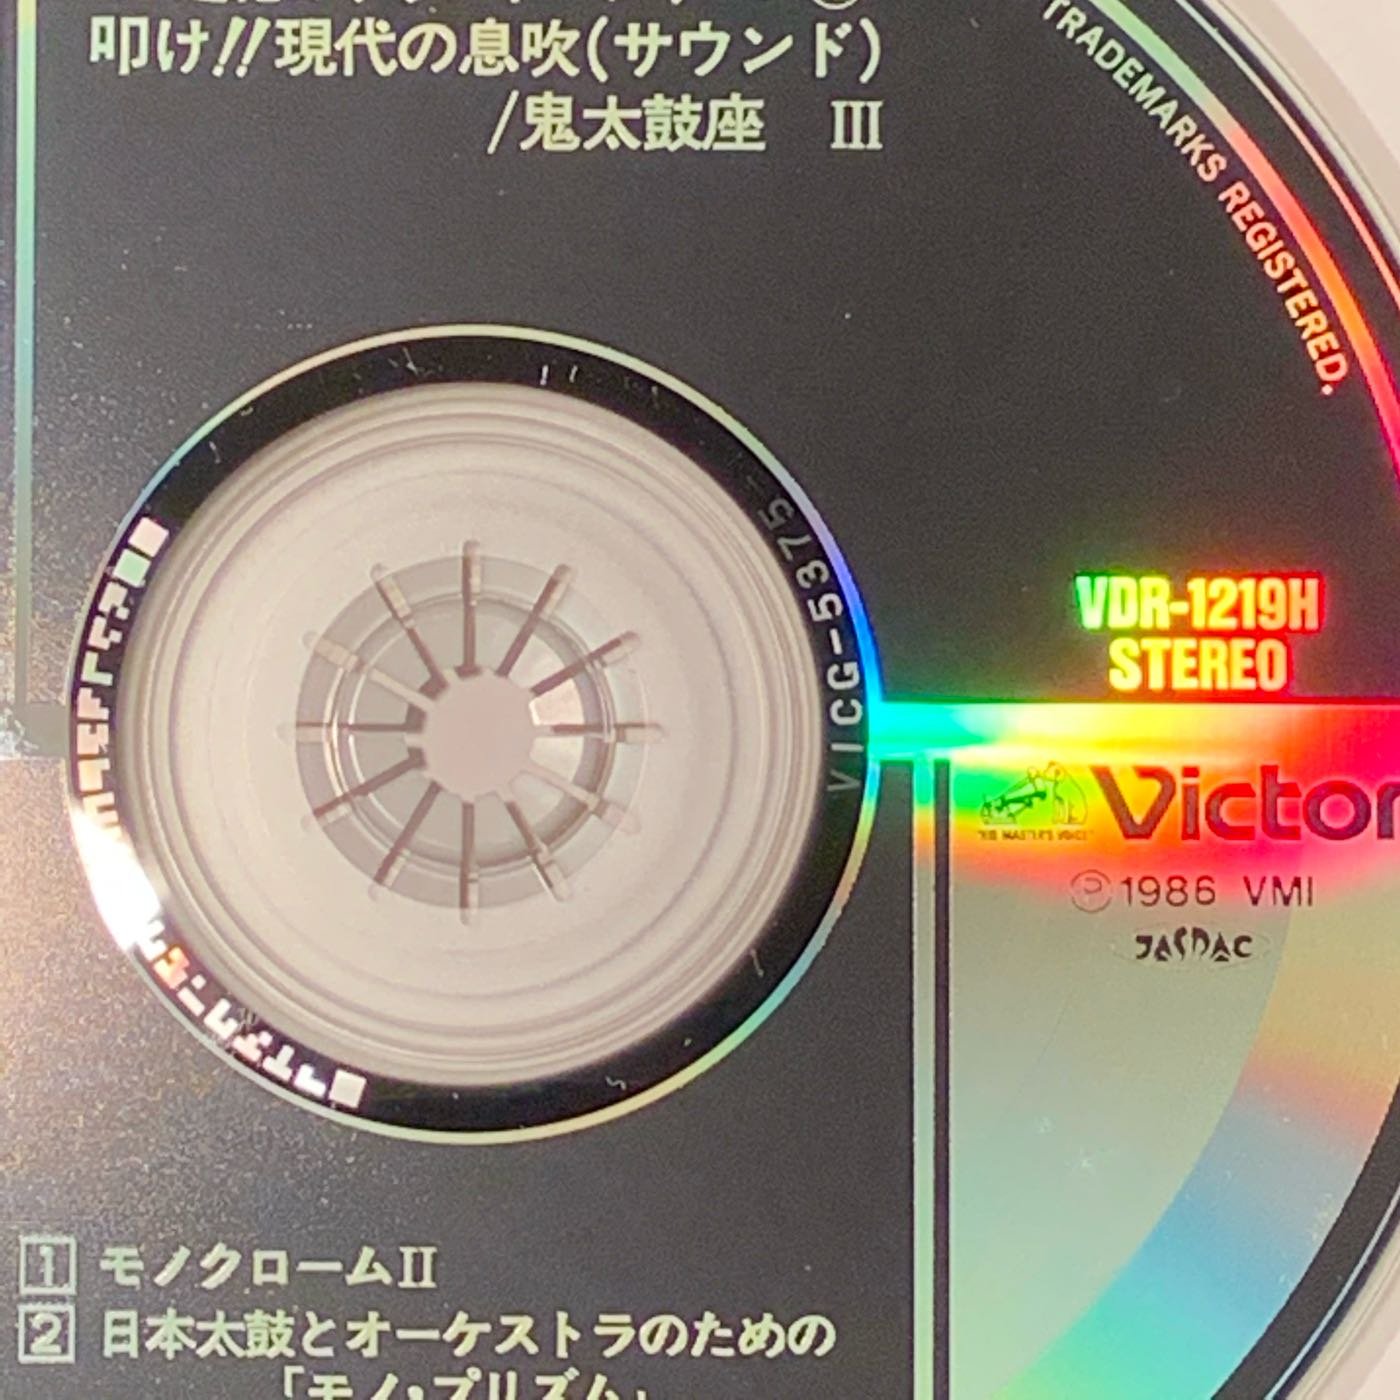 鬼太鼓座（3）ONDEKOZA 叩け!!現代の息吹/CD超絕のサウンド・シリーズ 